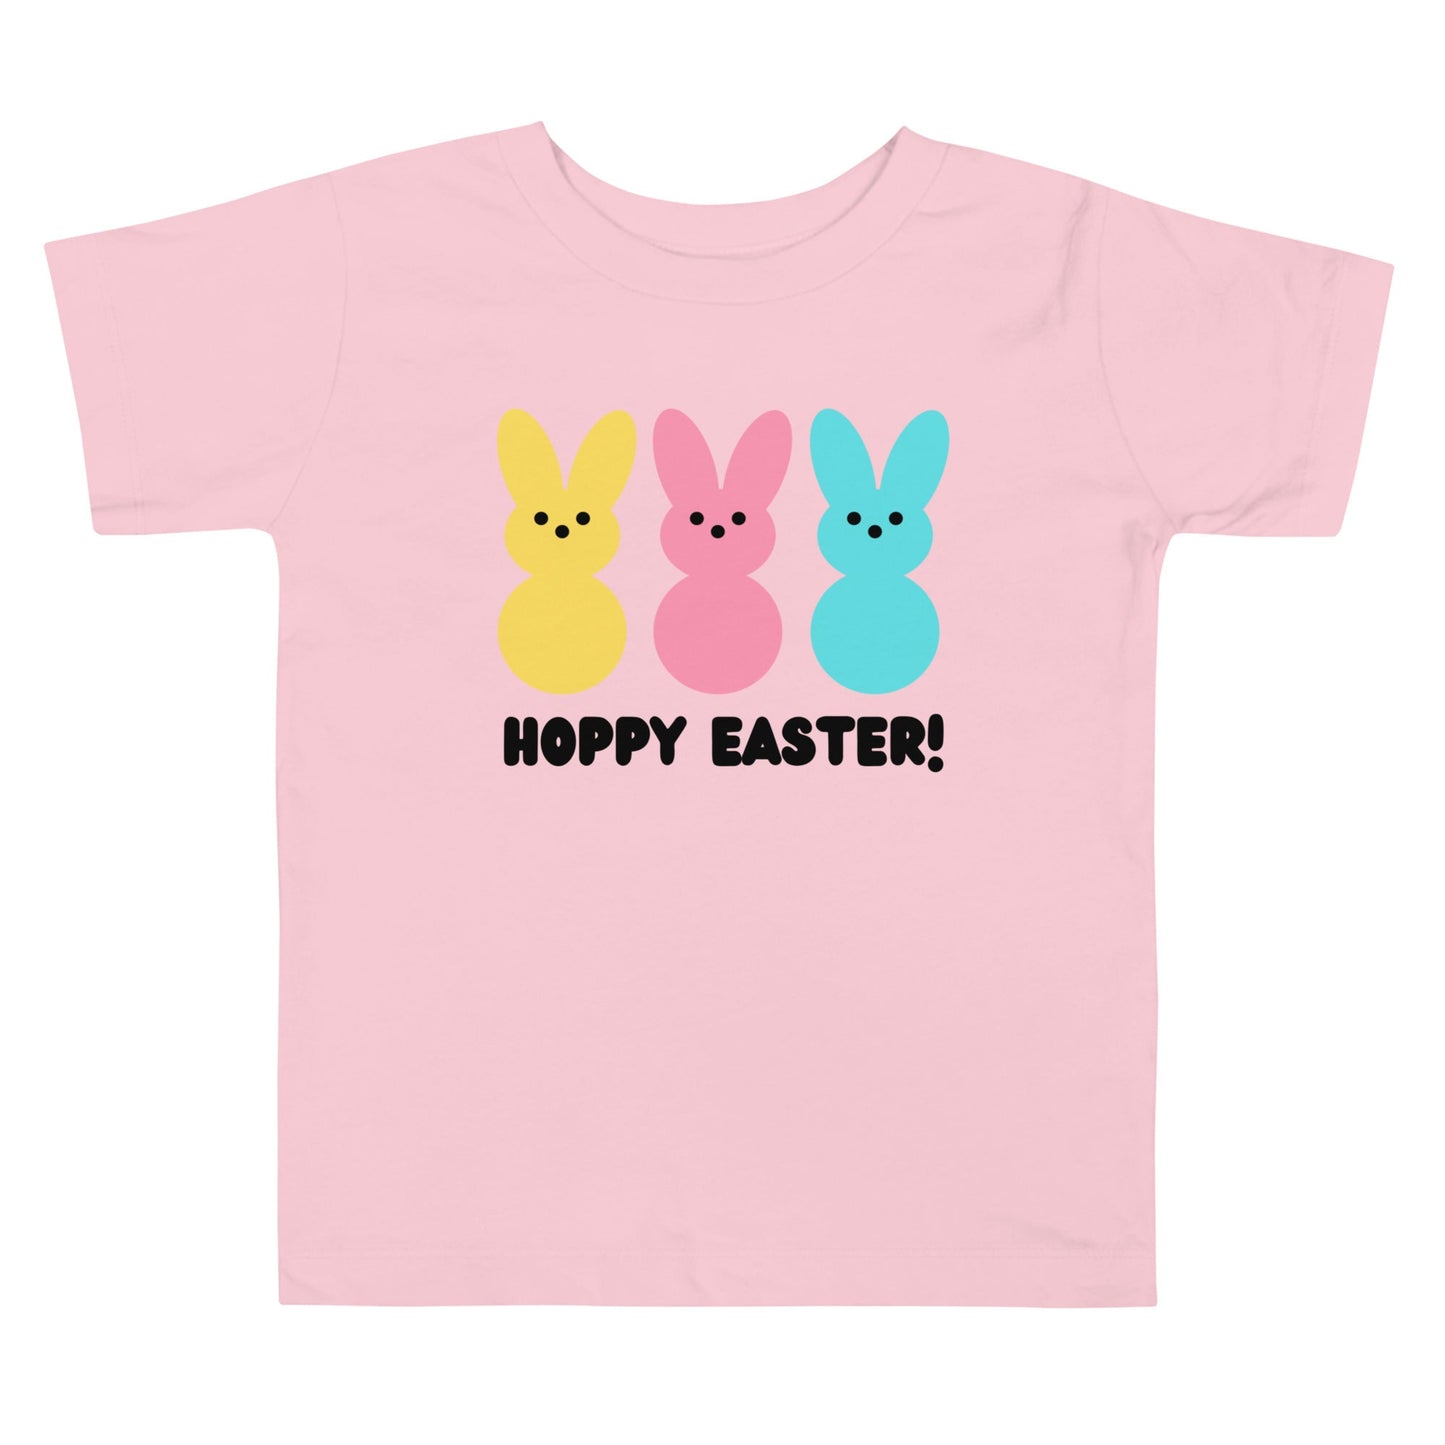 Hoppy Easter! | Toddler Short Sleeve Tee